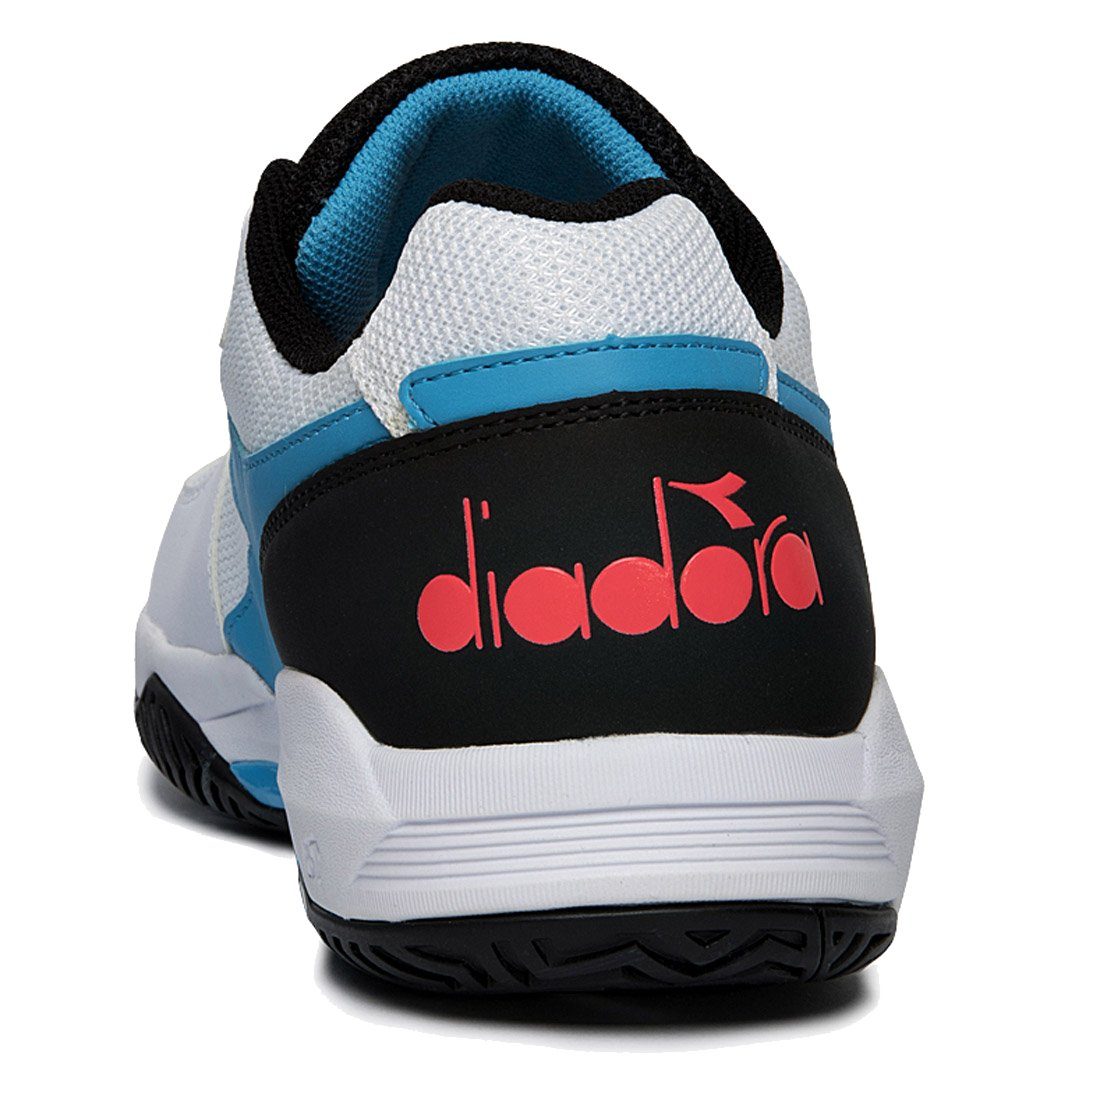 S.Challenge 3 Diadora AG Sneaker